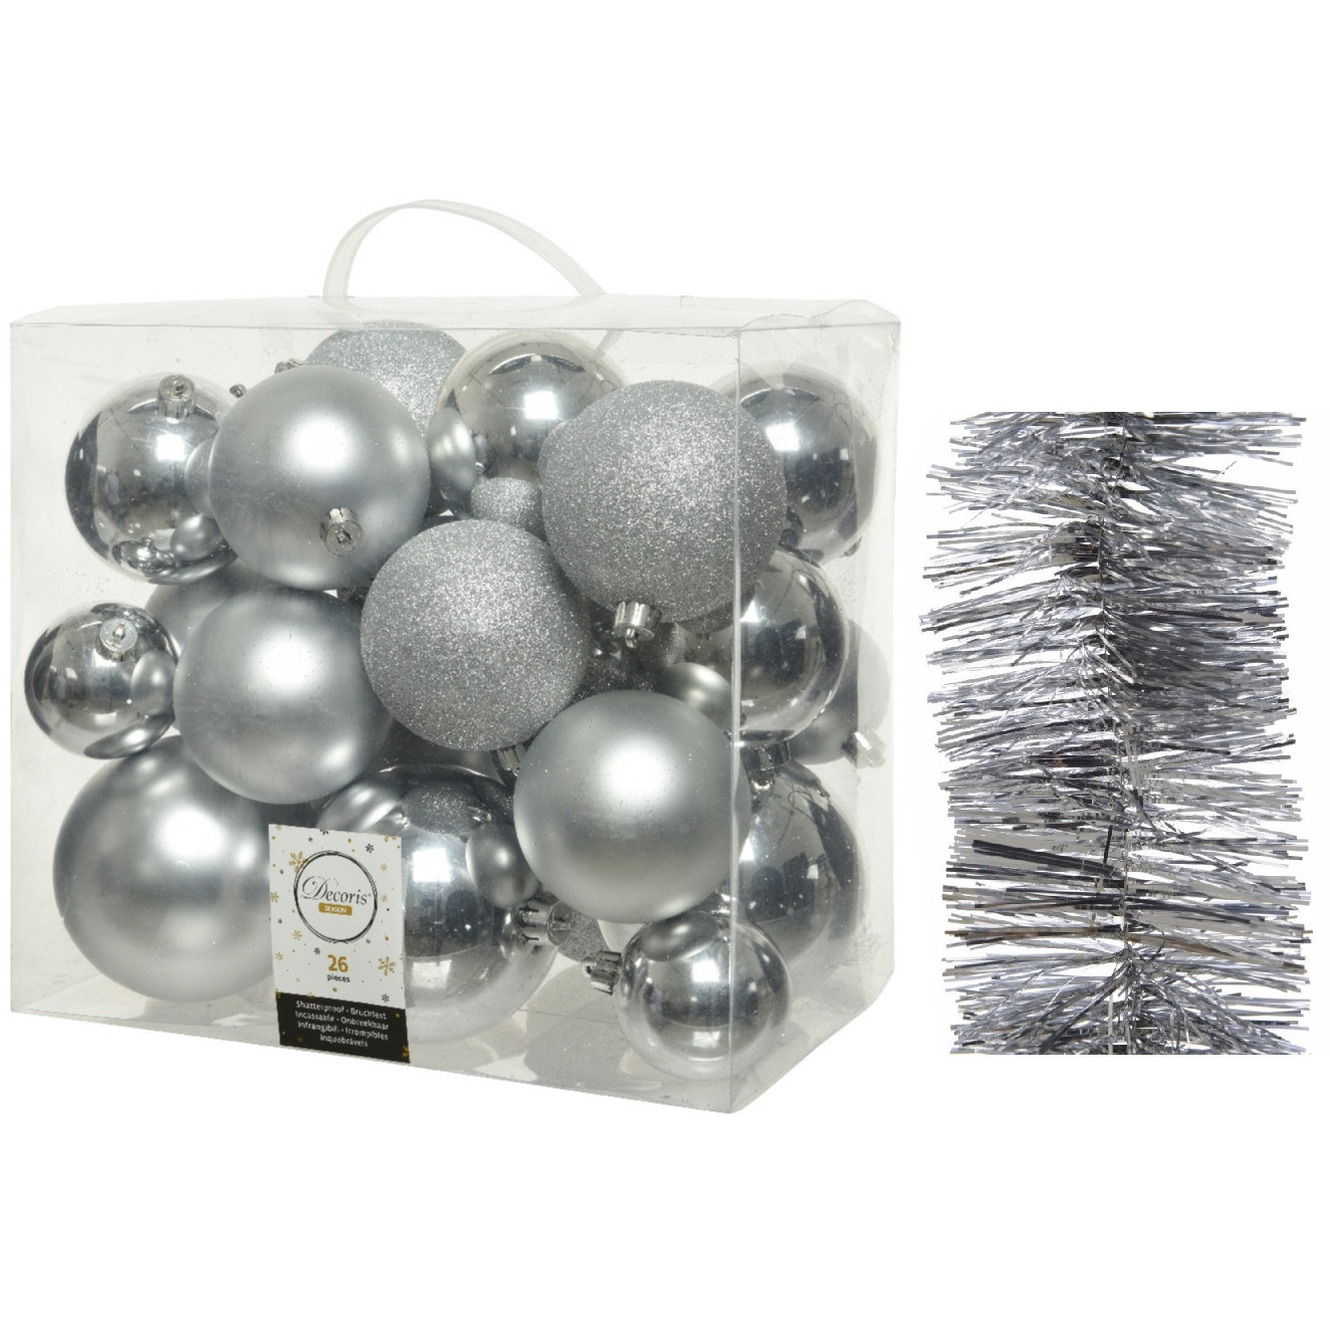 Kerstversiering kunststof kerstballen 6-8-10 cm met folieslingers pakket zilver van 28x stuks